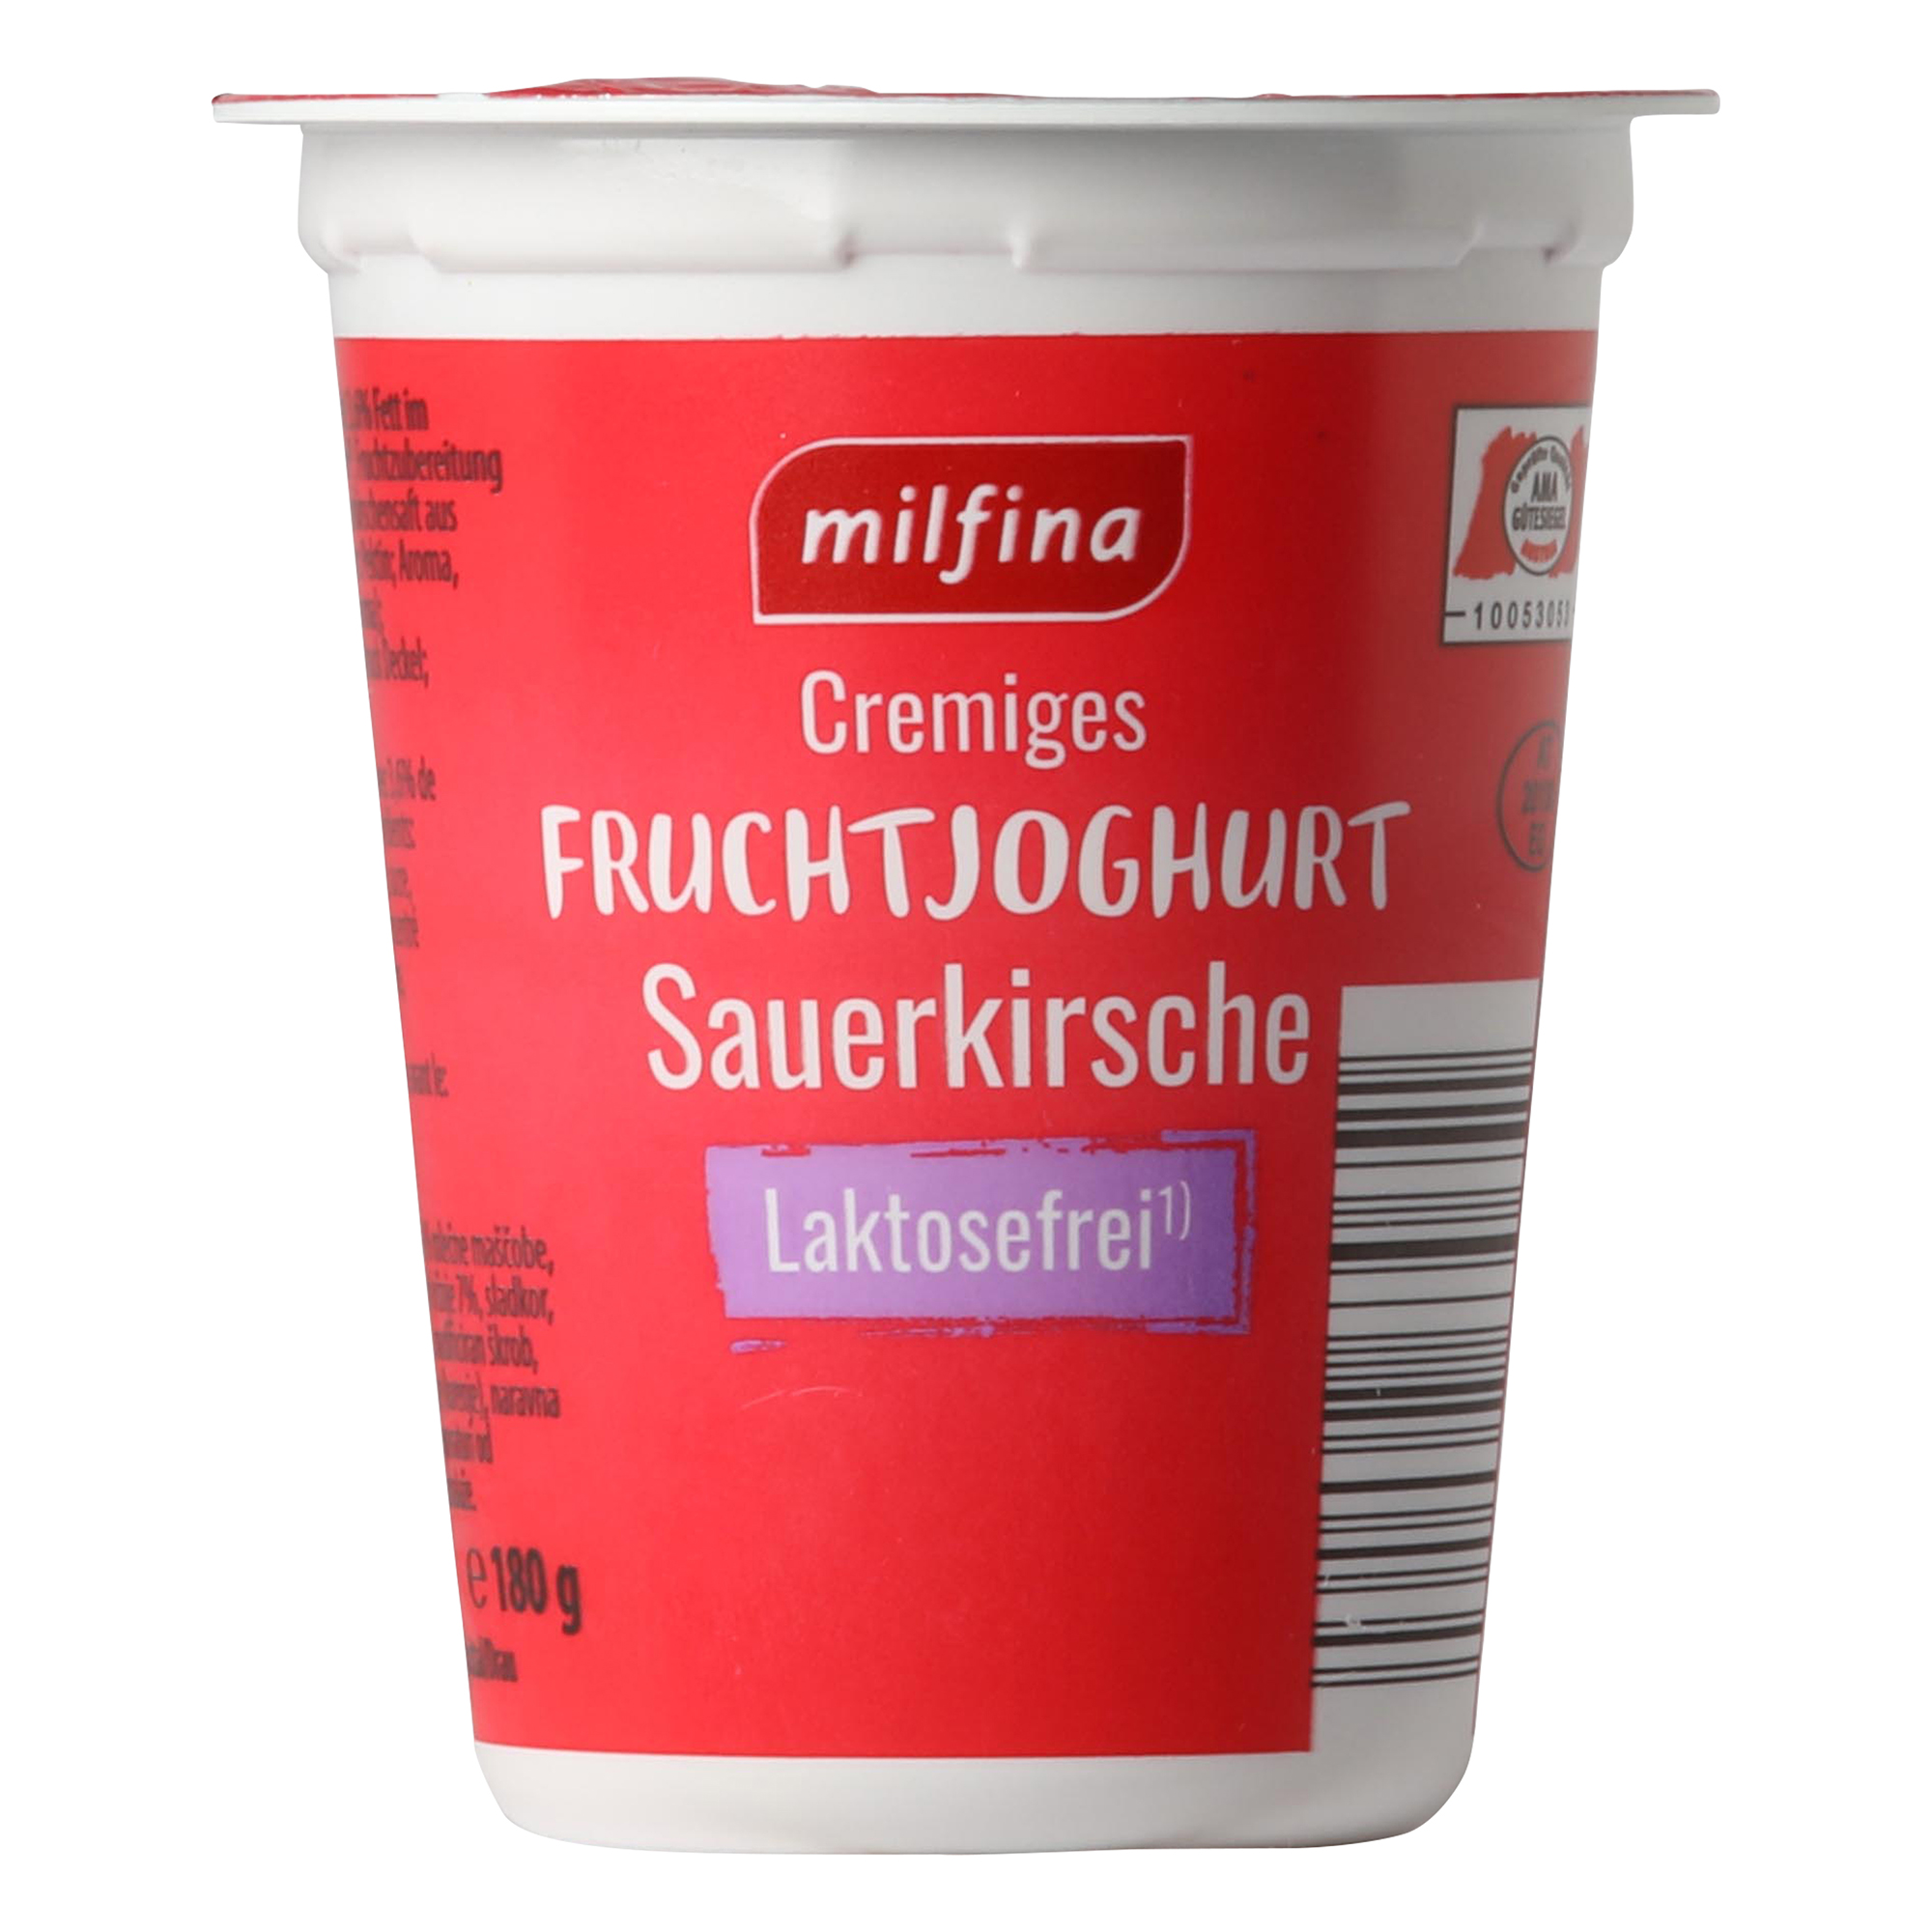 MILFINA Fruchtjoghurt laktosefrei, Sauerkirsche | ALDI-now